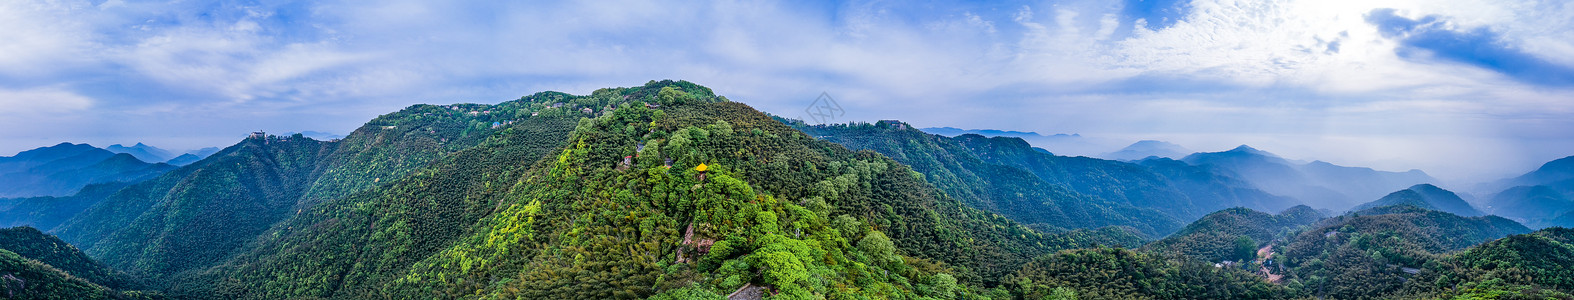 天空素材大图莫干山顶峰全景自然风景背景